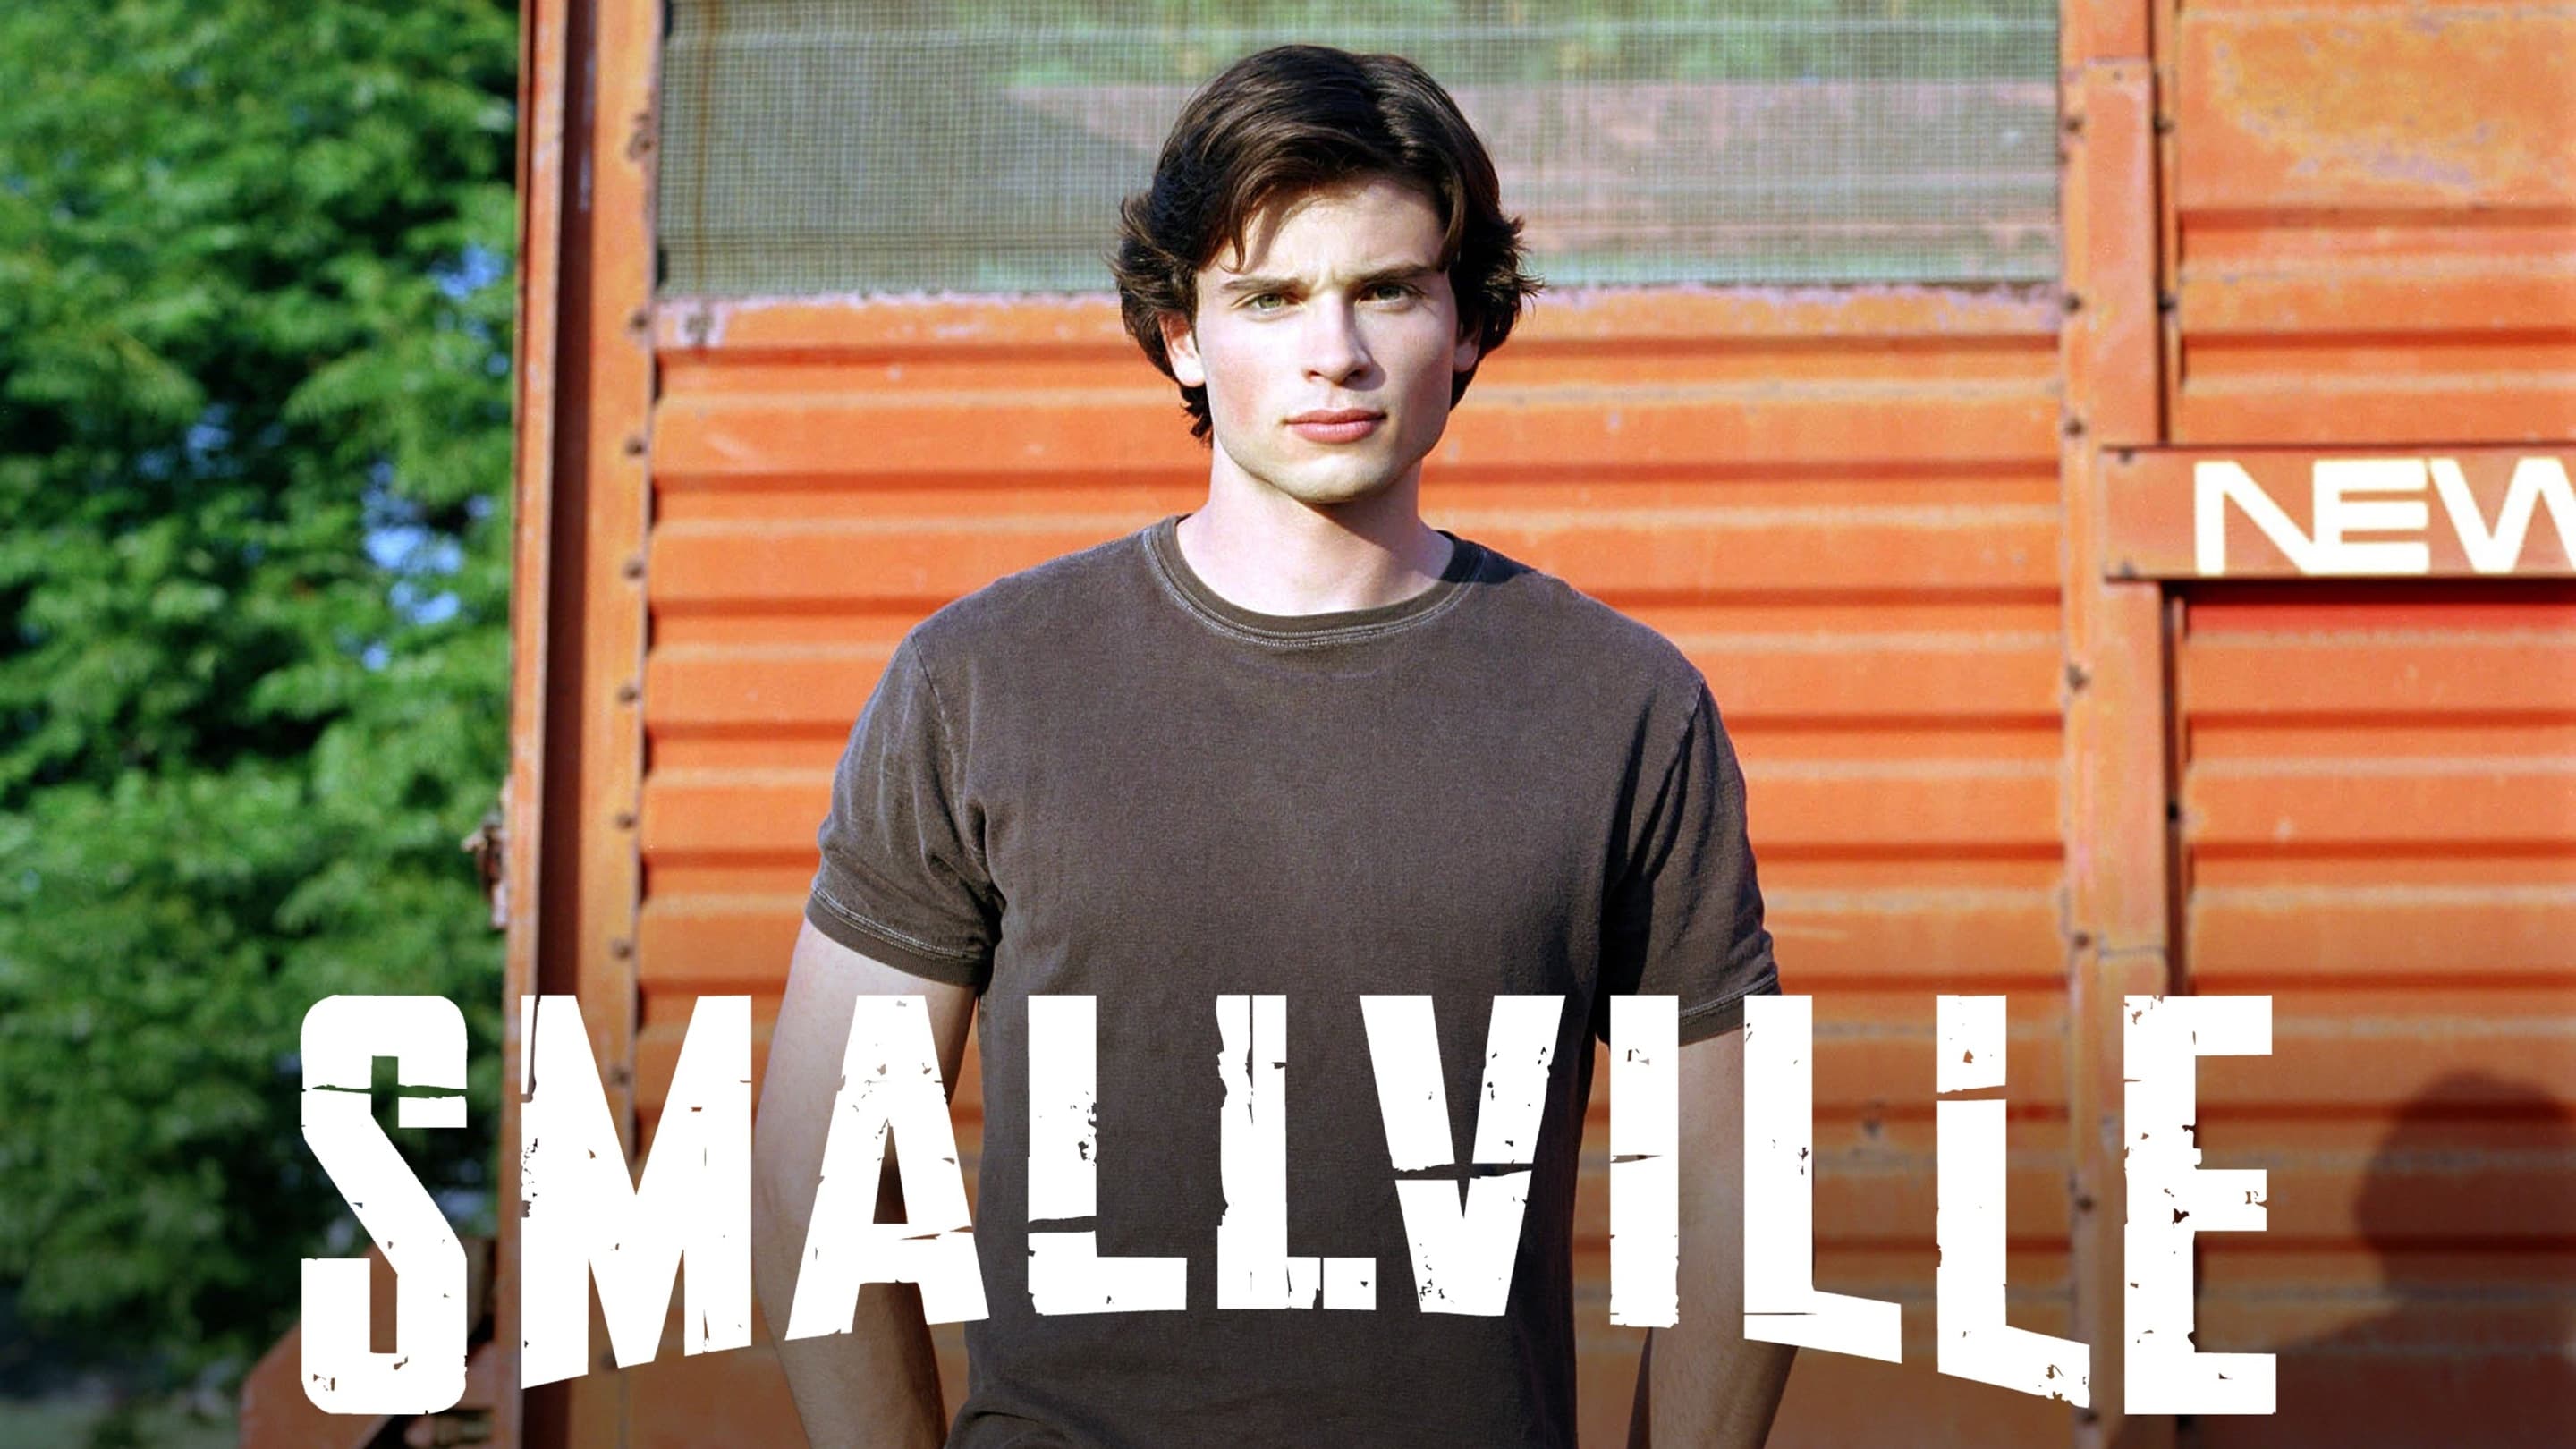 Smallville - Season 10 Episode 20